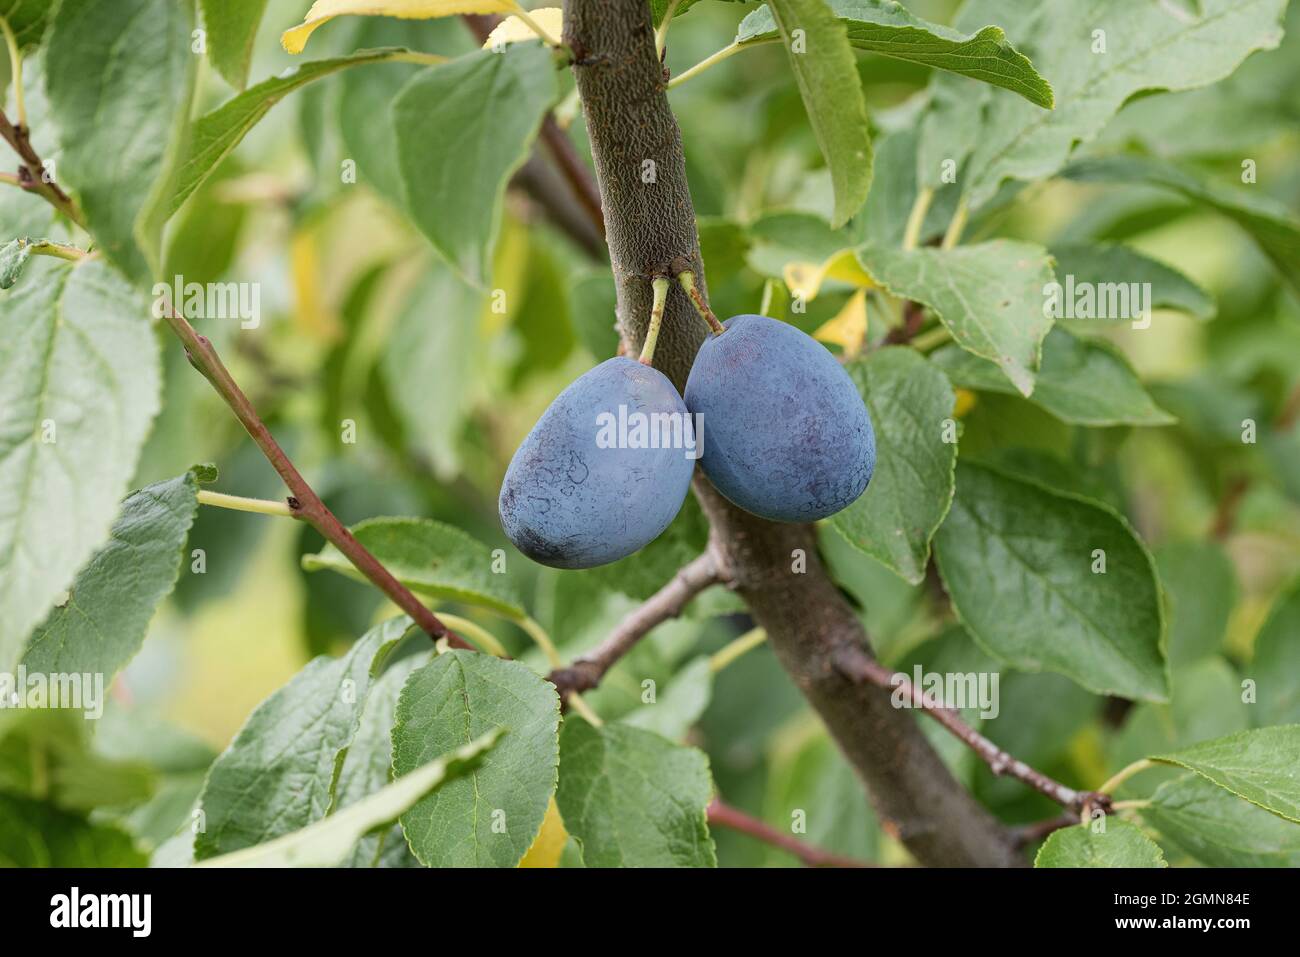 European plum (Prunus domestica 'Zum Felde', Prunus domestica Zum Felde), plums on a twig, cultivar President Stock Photo